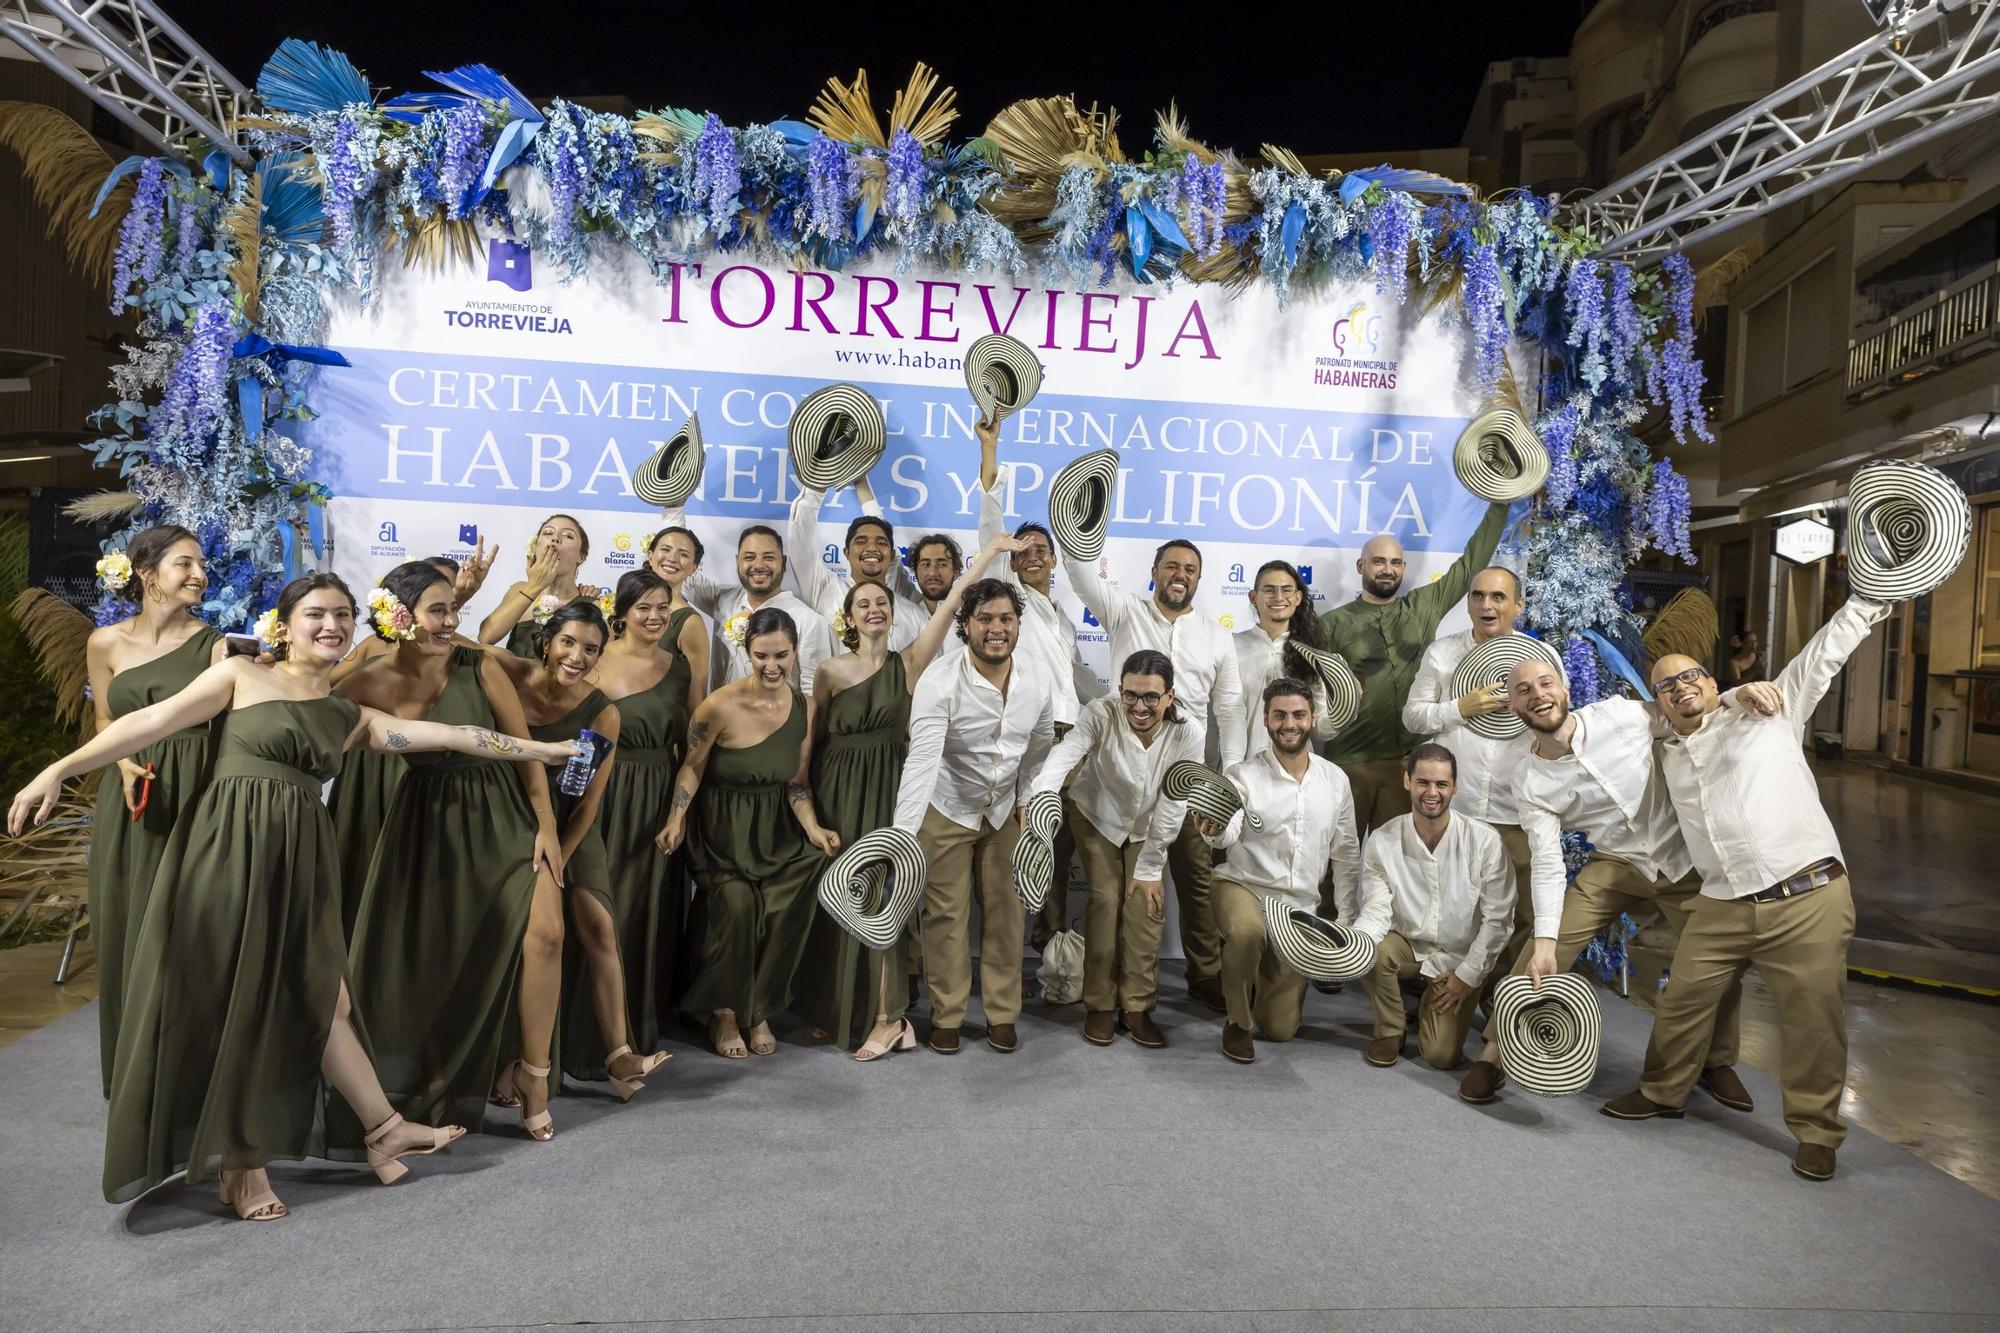 Cuarta velada del Certamen Internacional de Habaneras y Polifonía de Torrevieja